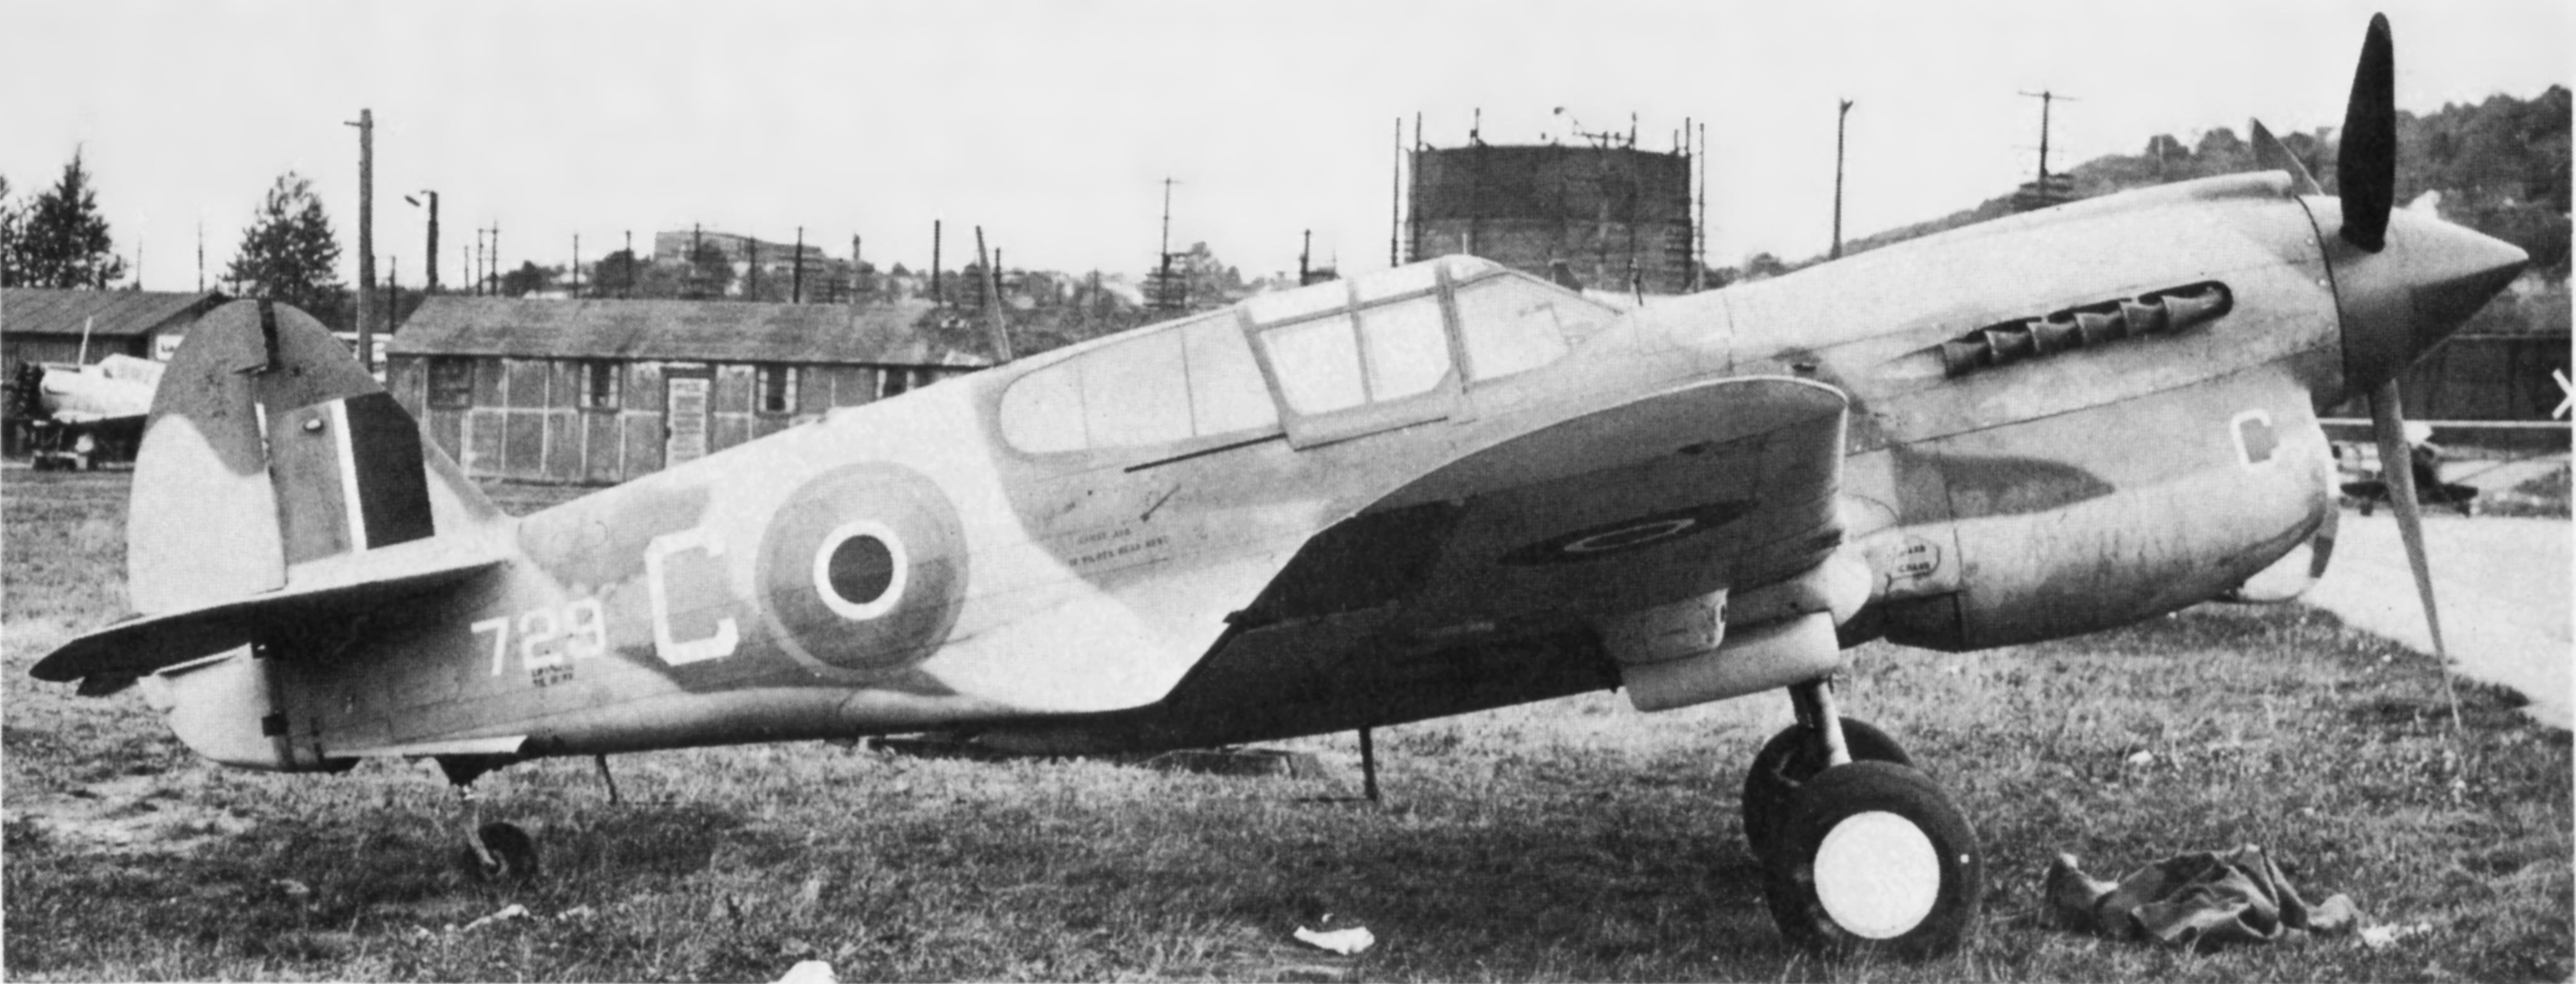 ex-RCAF Curtiss Kittyhawk Mk.1a (P-40E-1) cn18874 (ex 41-36216, ex ET862)